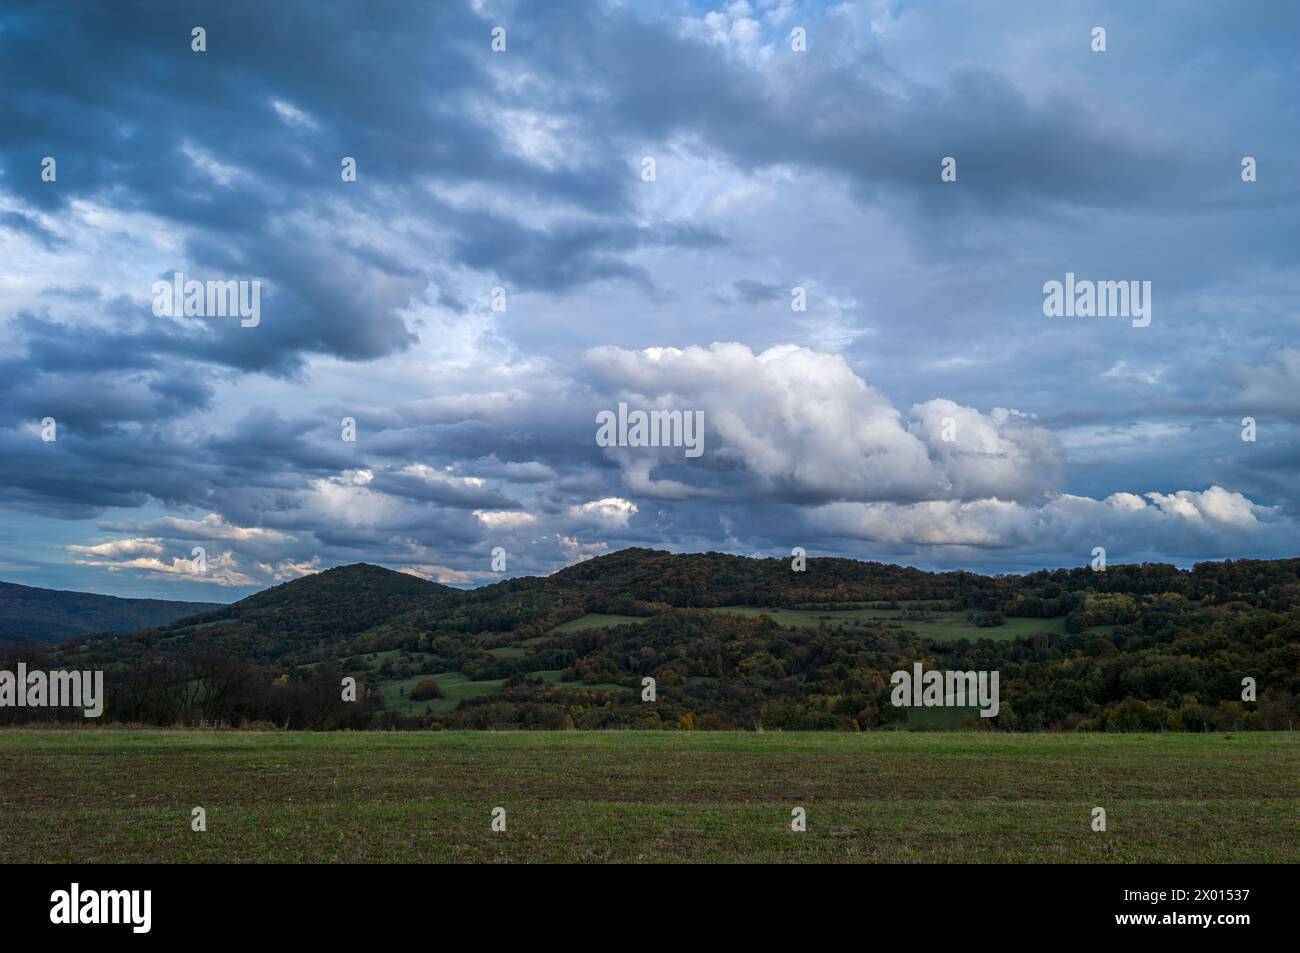 Herbstliche ländliche Landschaft mit blauem stürmischem Himmel und weißen Wolken. Mit Wiese und Wald im Hintergrund. Dubrava, Horna Suca, Slowakei Stockfoto